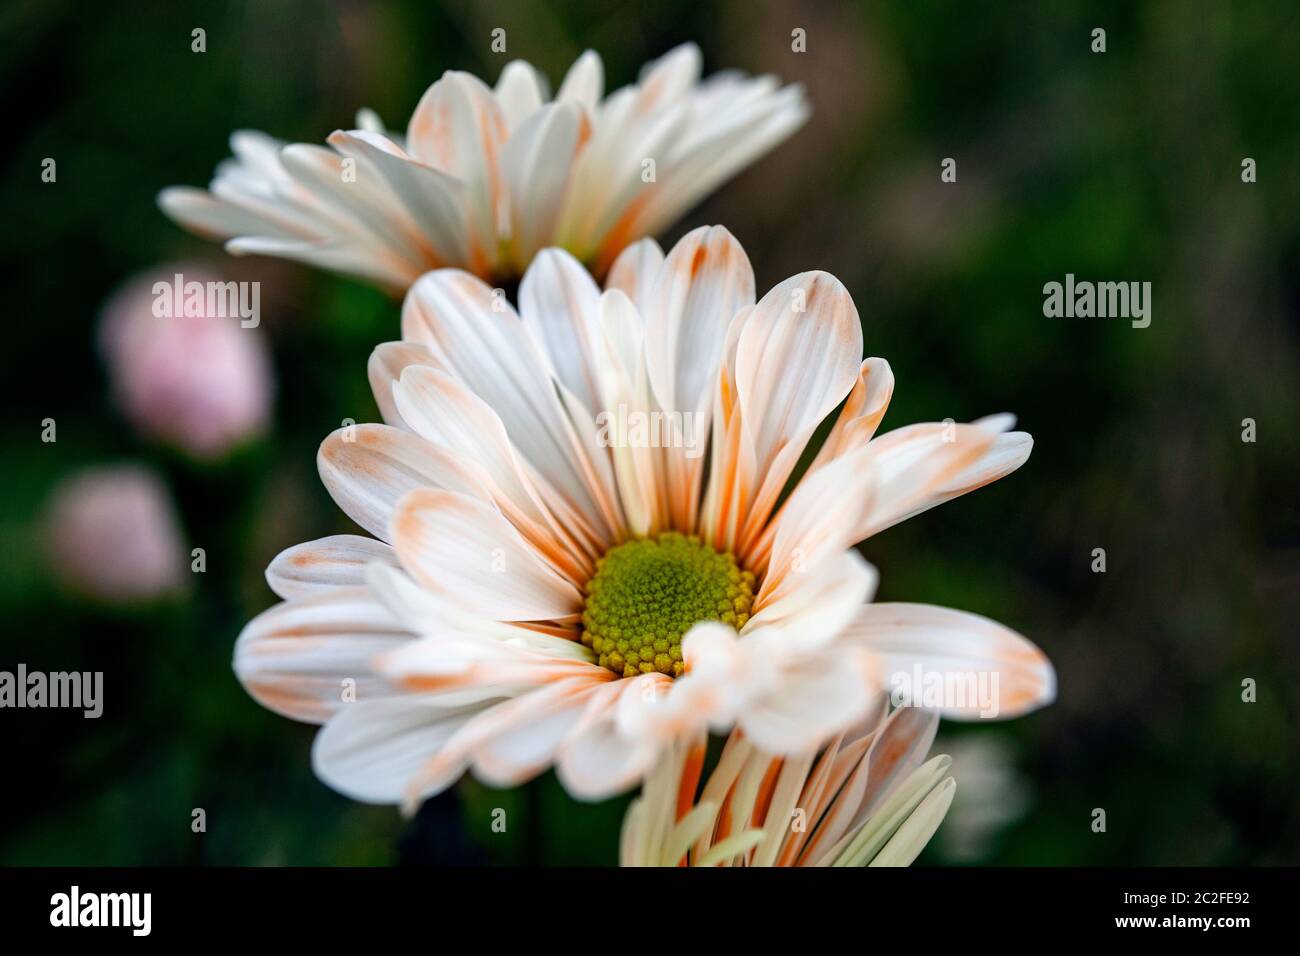 LB00184-00...WASHINGTON - LensBaby image of  daisy flowers. Stock Photo